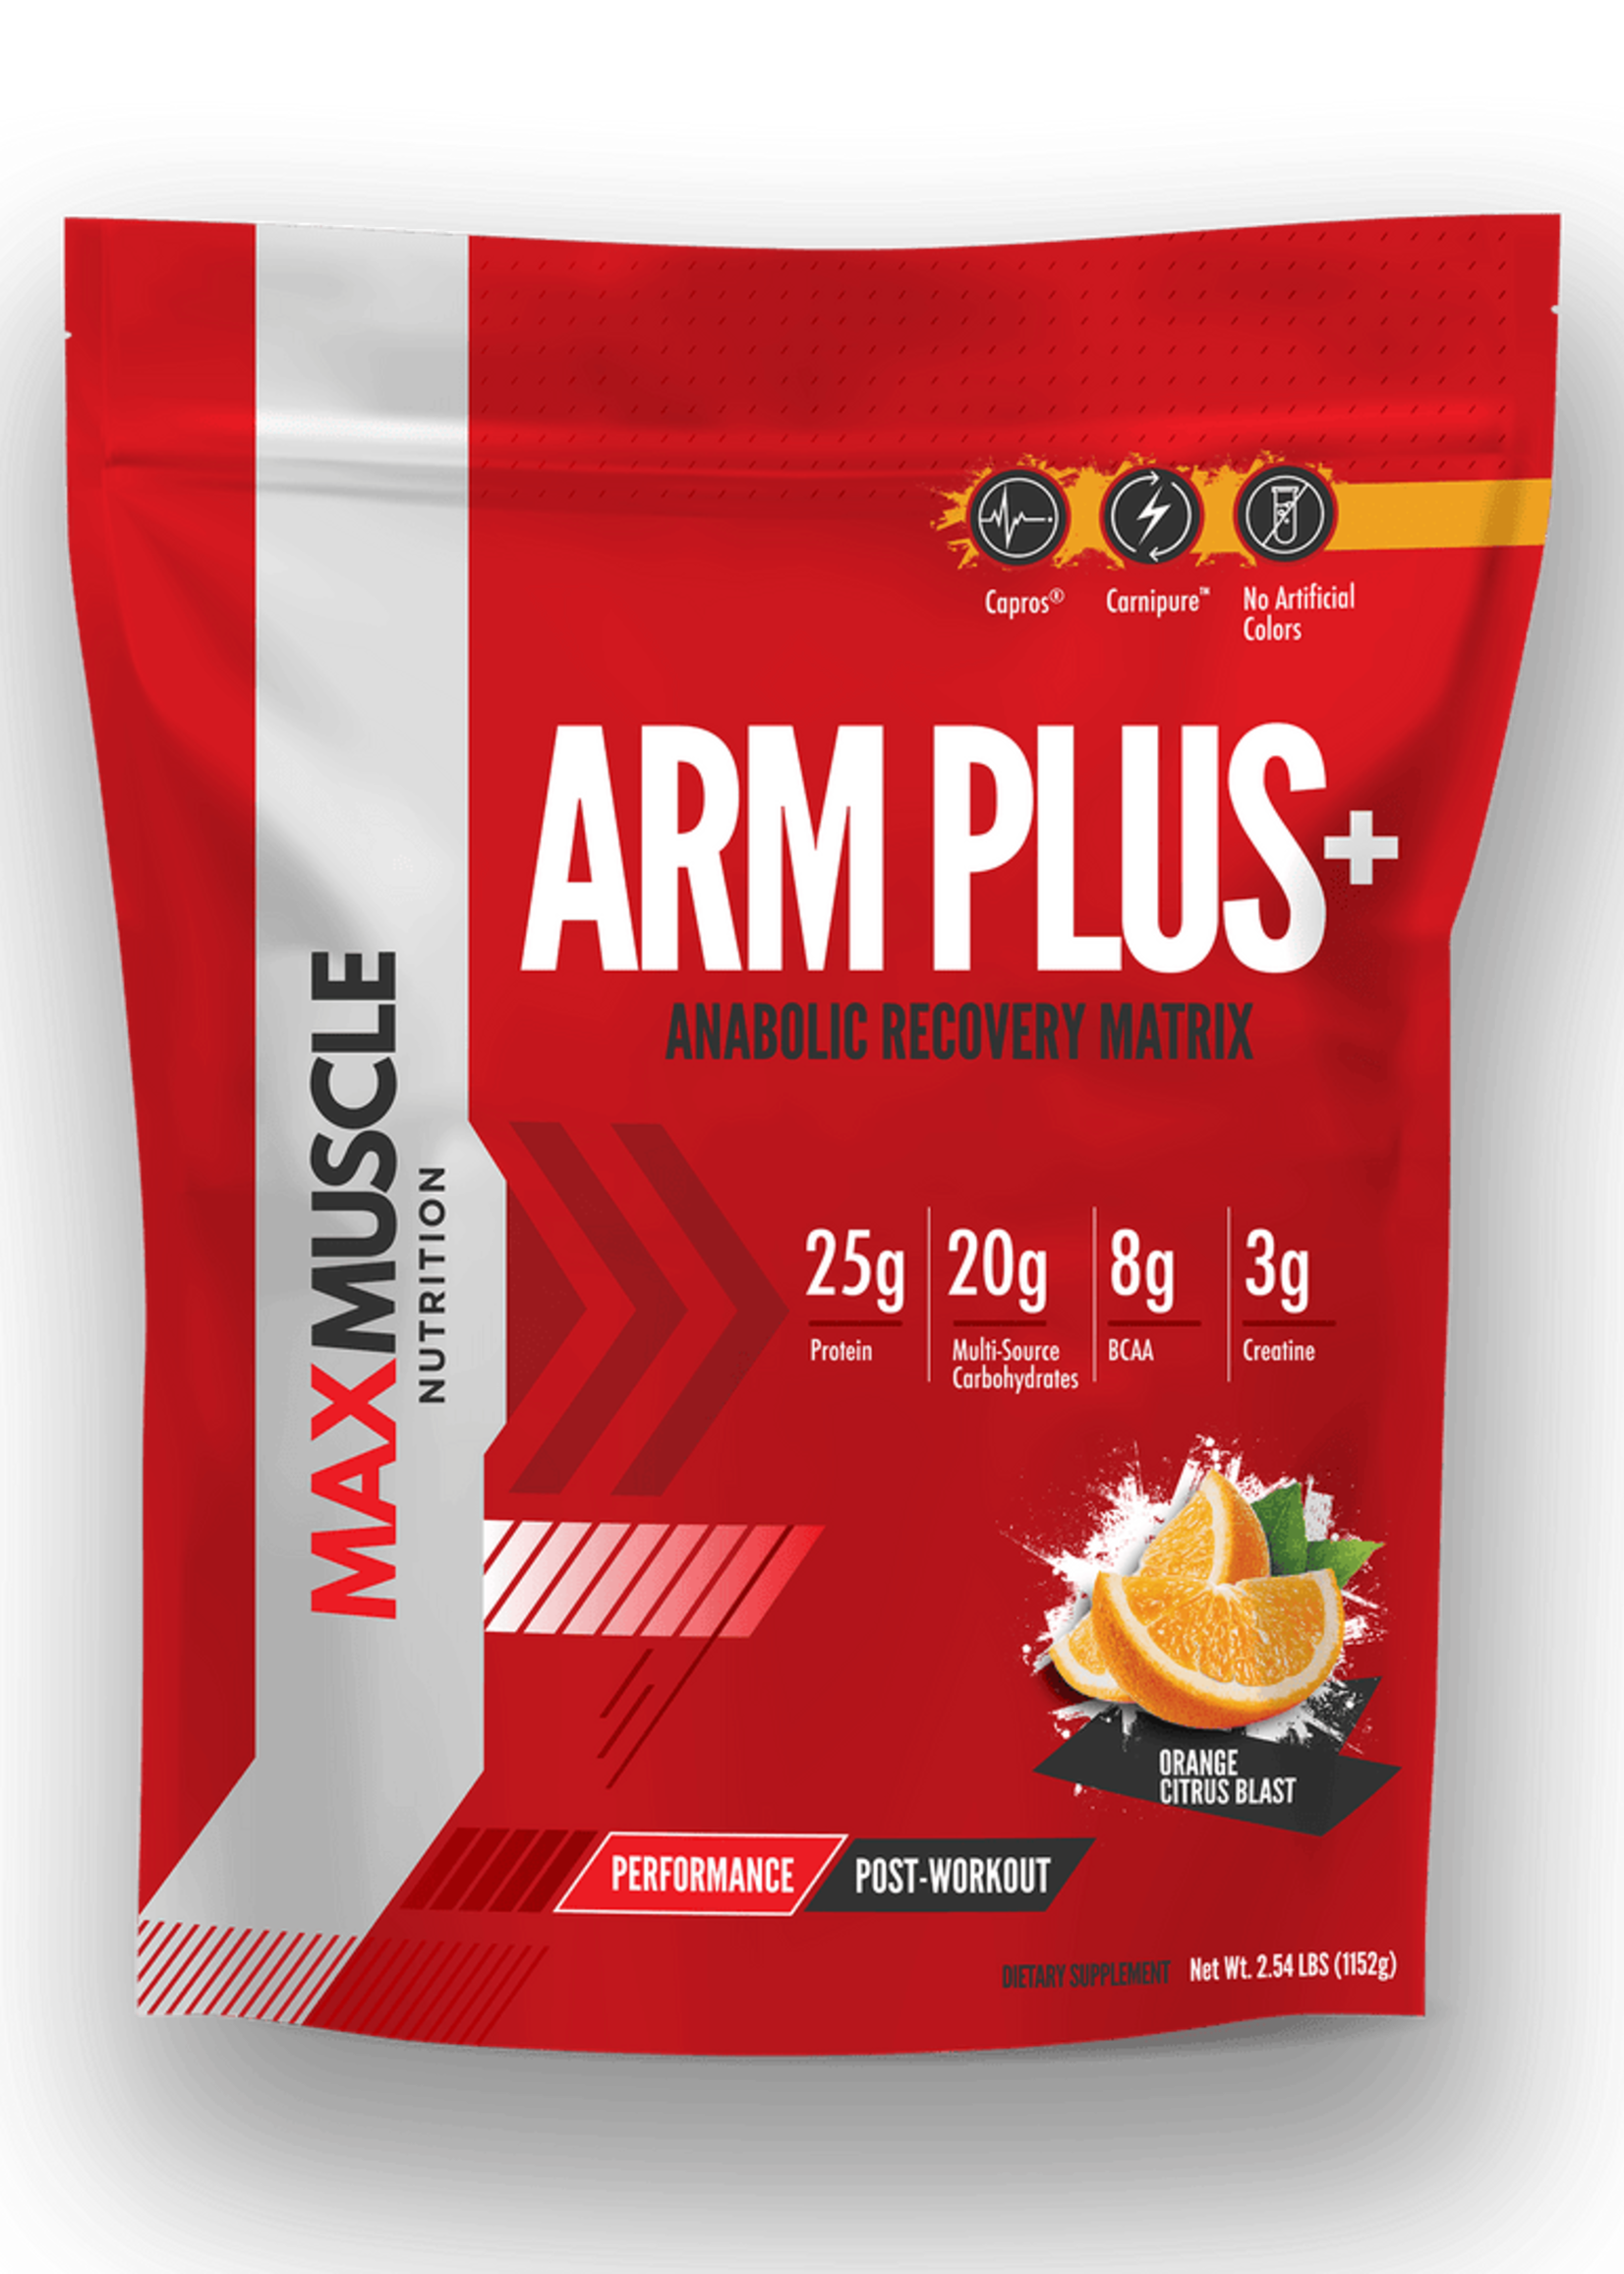 Max Muscle Arm Plus+ Post Workout Orange Citrus Blast